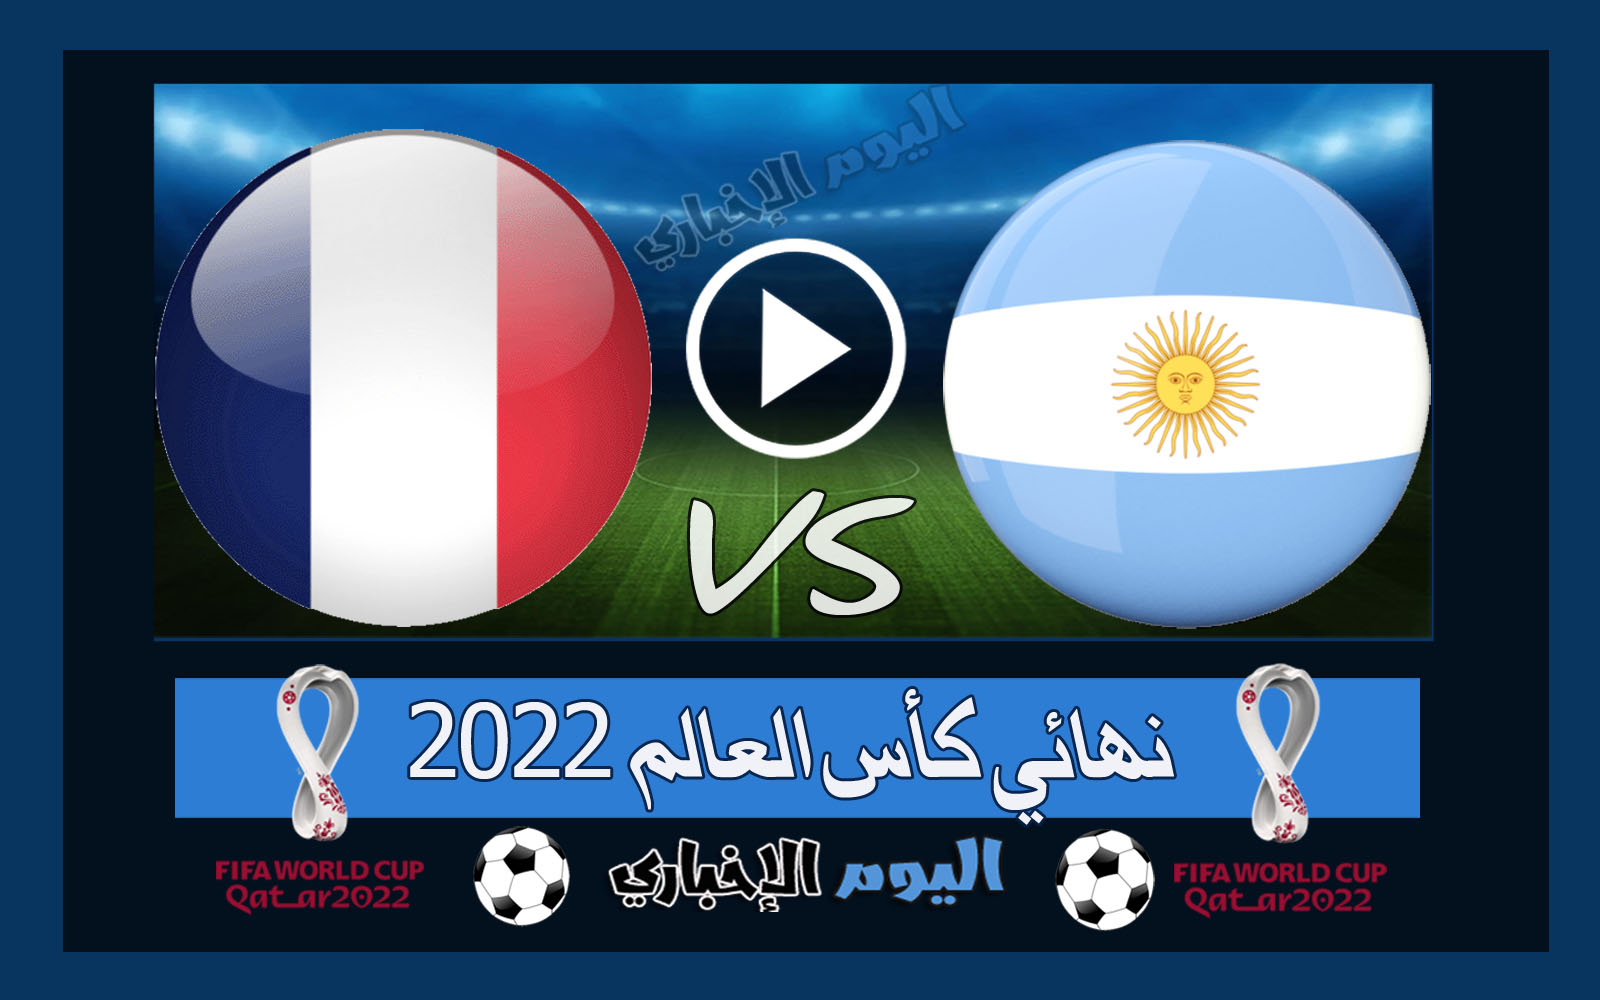 “ميسي بطلاً لكأس العالم” نتيجة مباراة الارجنتين وفرنسا 3-3 اهداف ركلات الترجيح 4-2 ملخص اليوم في نهائي مونديال قطر 2022